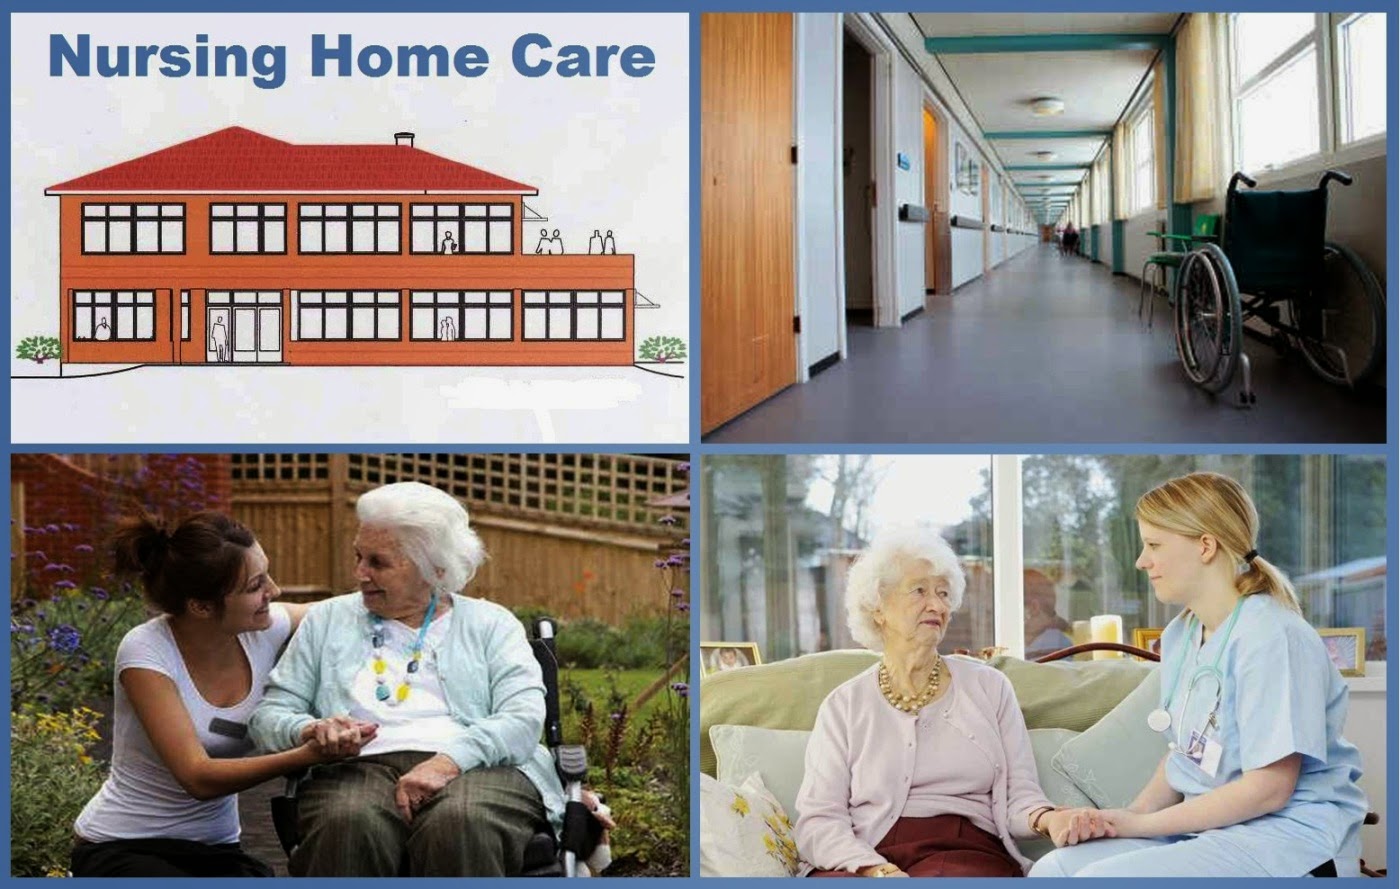 Nursing Home Care | Small Business Ideas